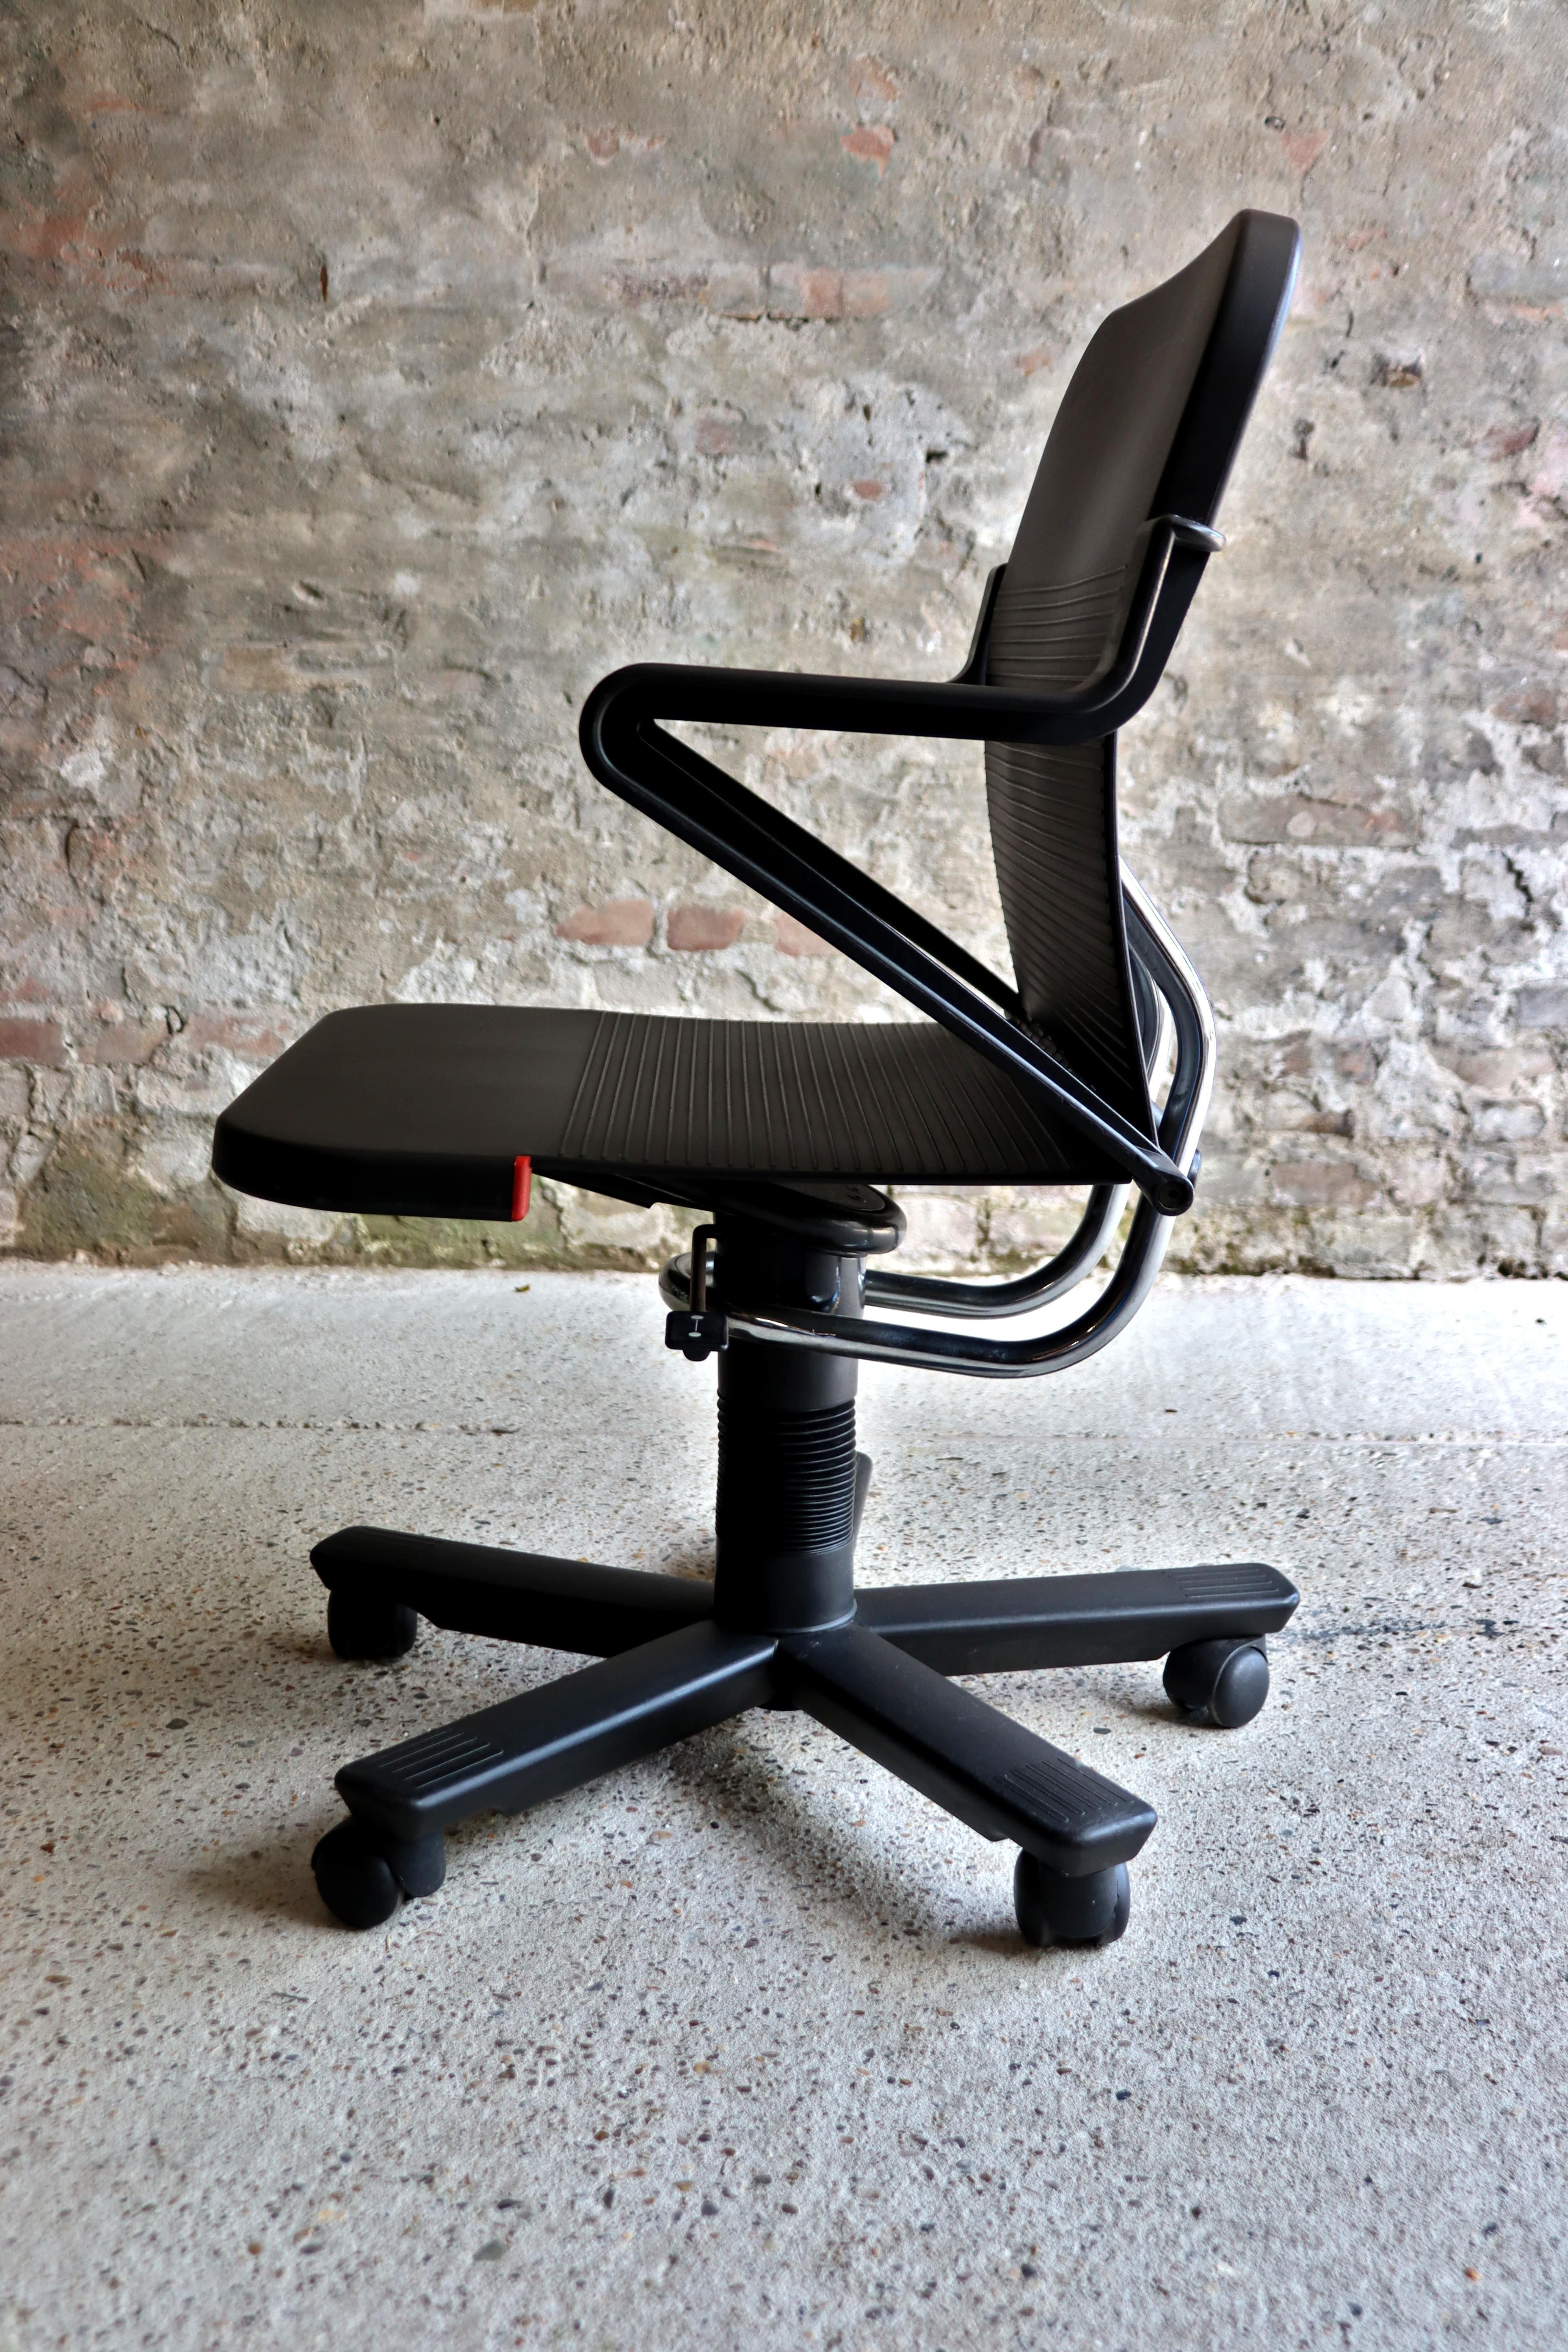 Roberto Lucci – Italian Desk Chair – Paolo Orlandini – Lamm – 1980s For Sale 1